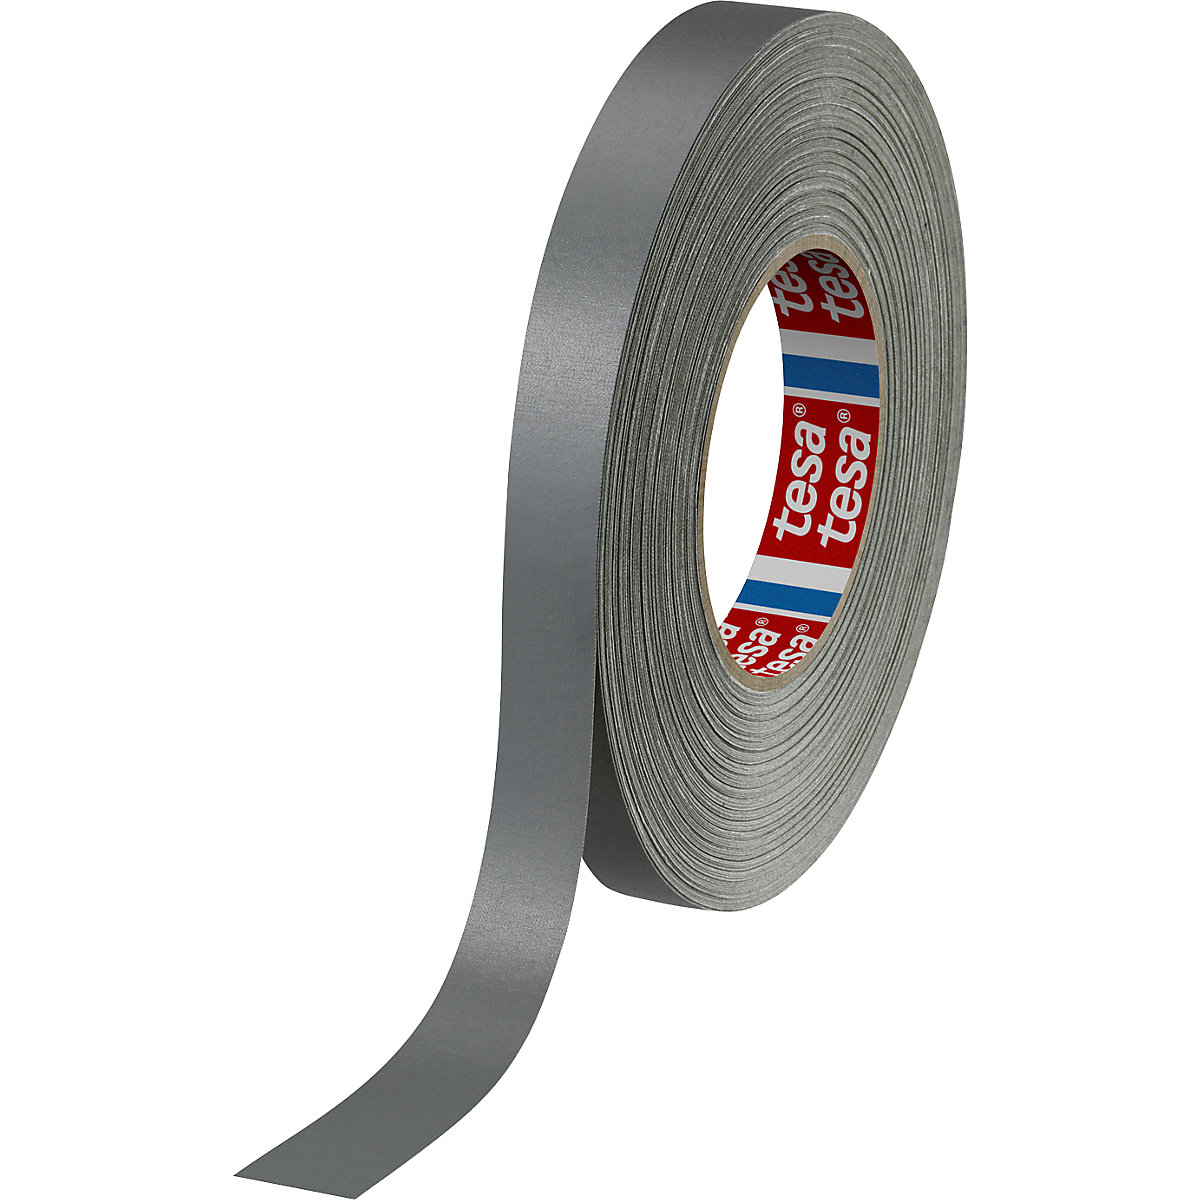 Tkaninová páska – tesa, tesaband® 4651 Premium, bal.j. 48 rolí, stříbrná, šířka pásky 19 mm-1